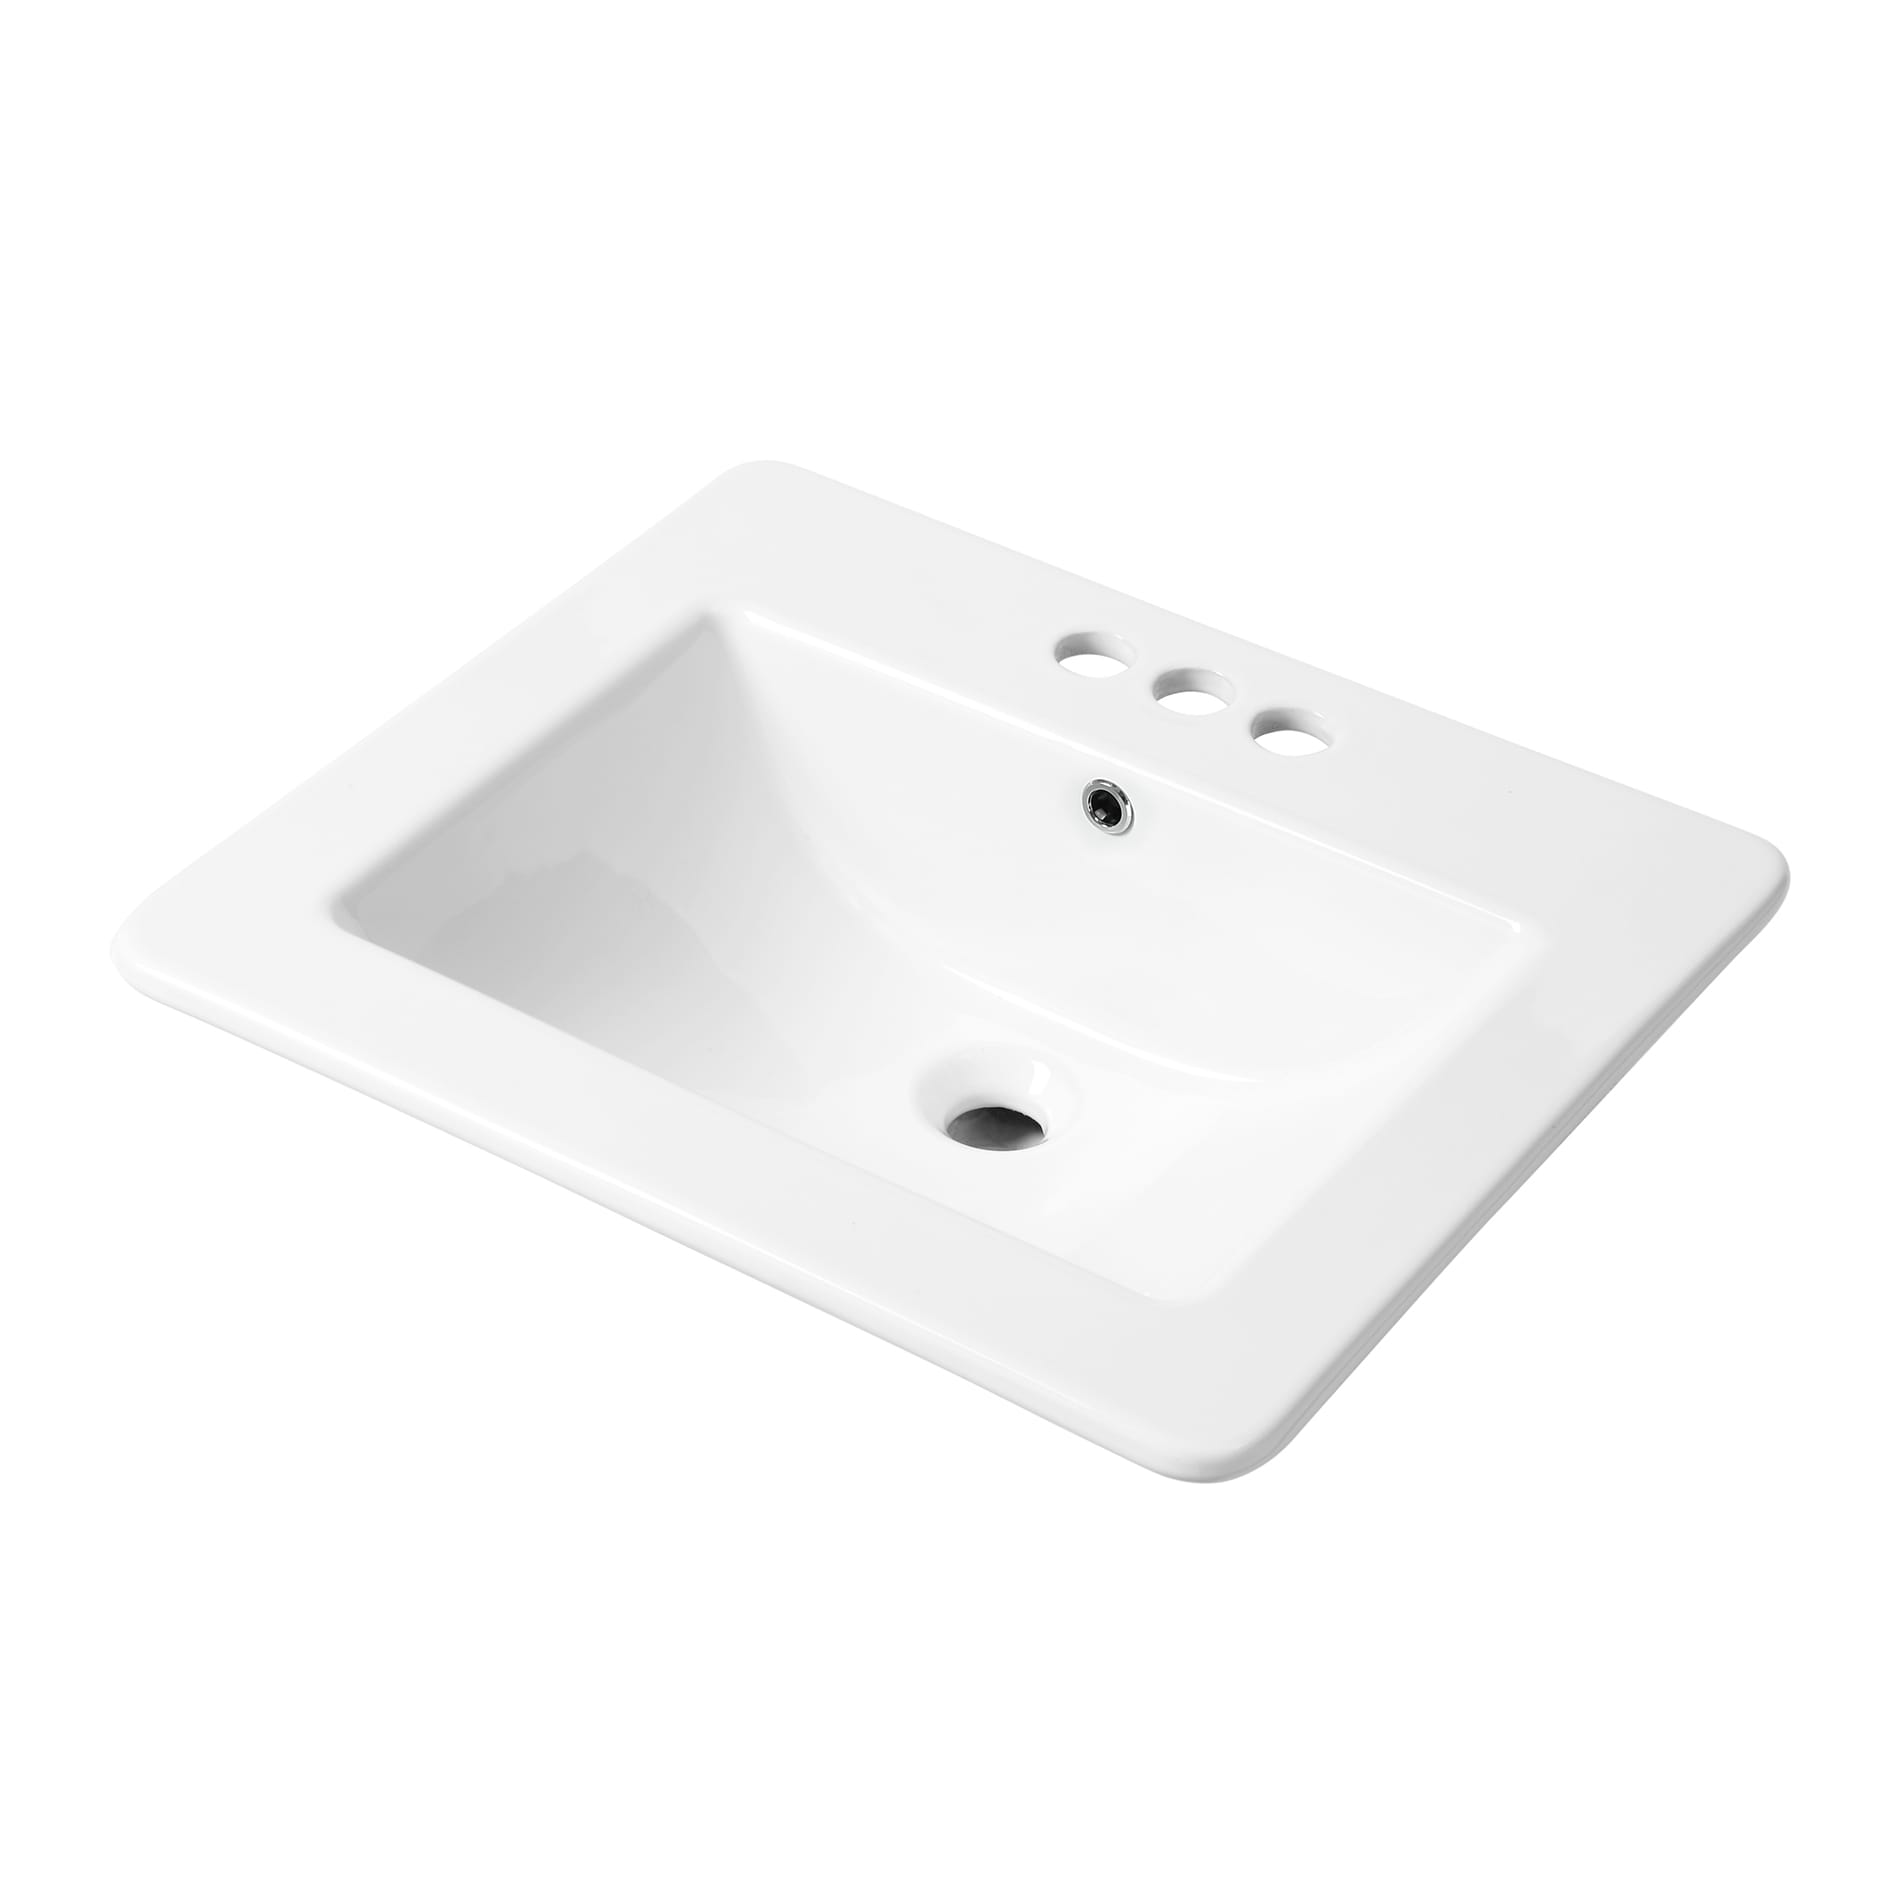 Flex White Bathroom & Pedestal Sinks at